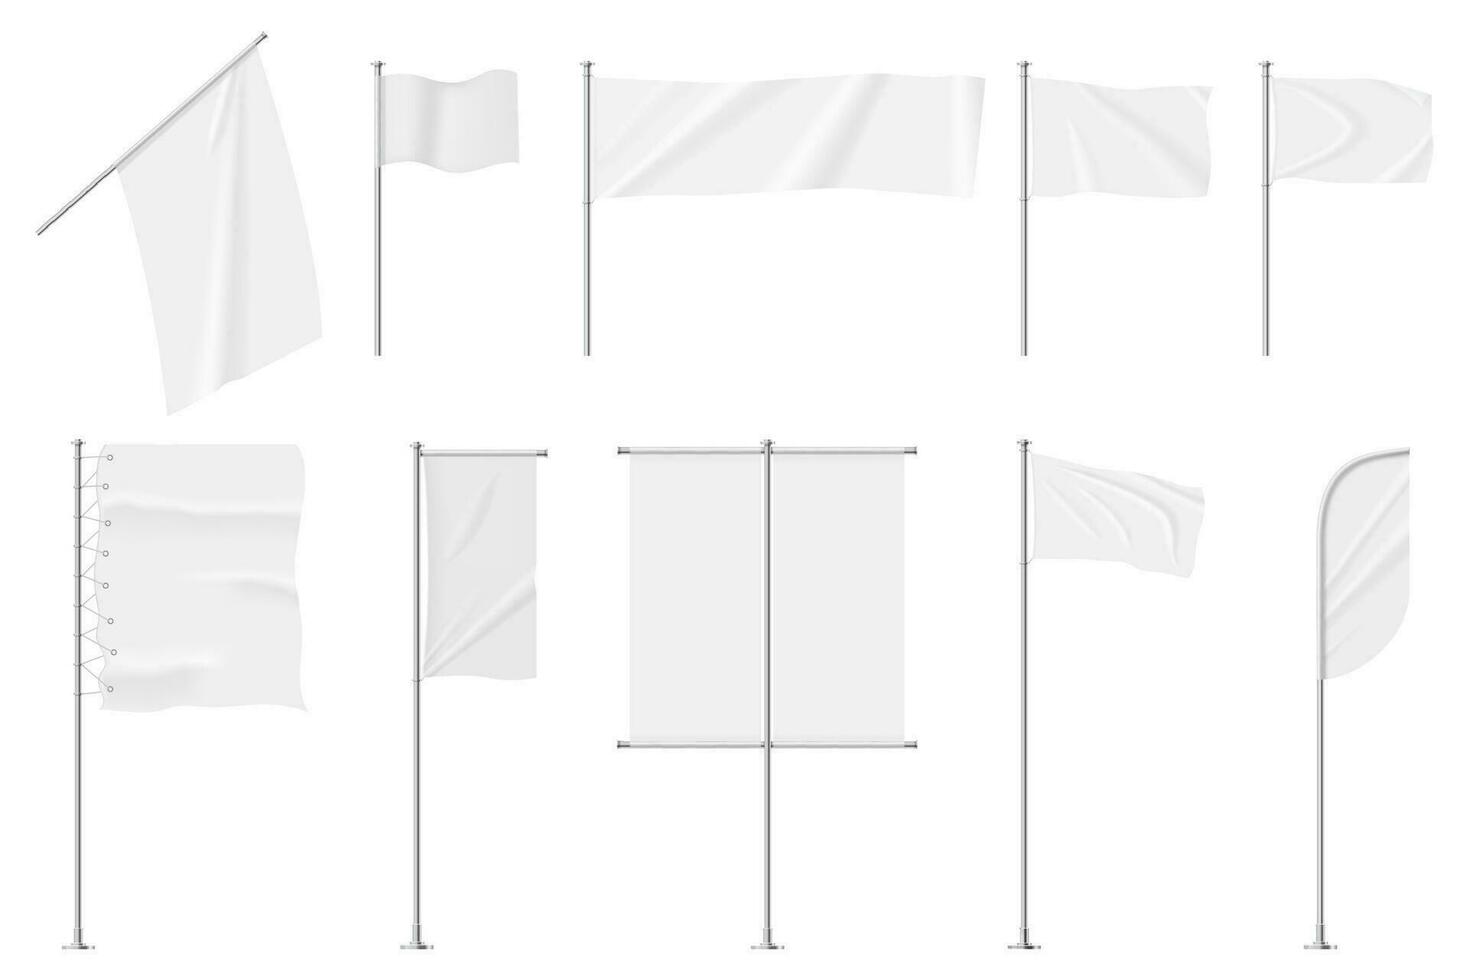 realista branco têxtil bandeiras em pólo, em branco publicidade bandeiras. esvaziar tecido bandeira modelo, suspensão pano bandeira tabuleta vetor conjunto